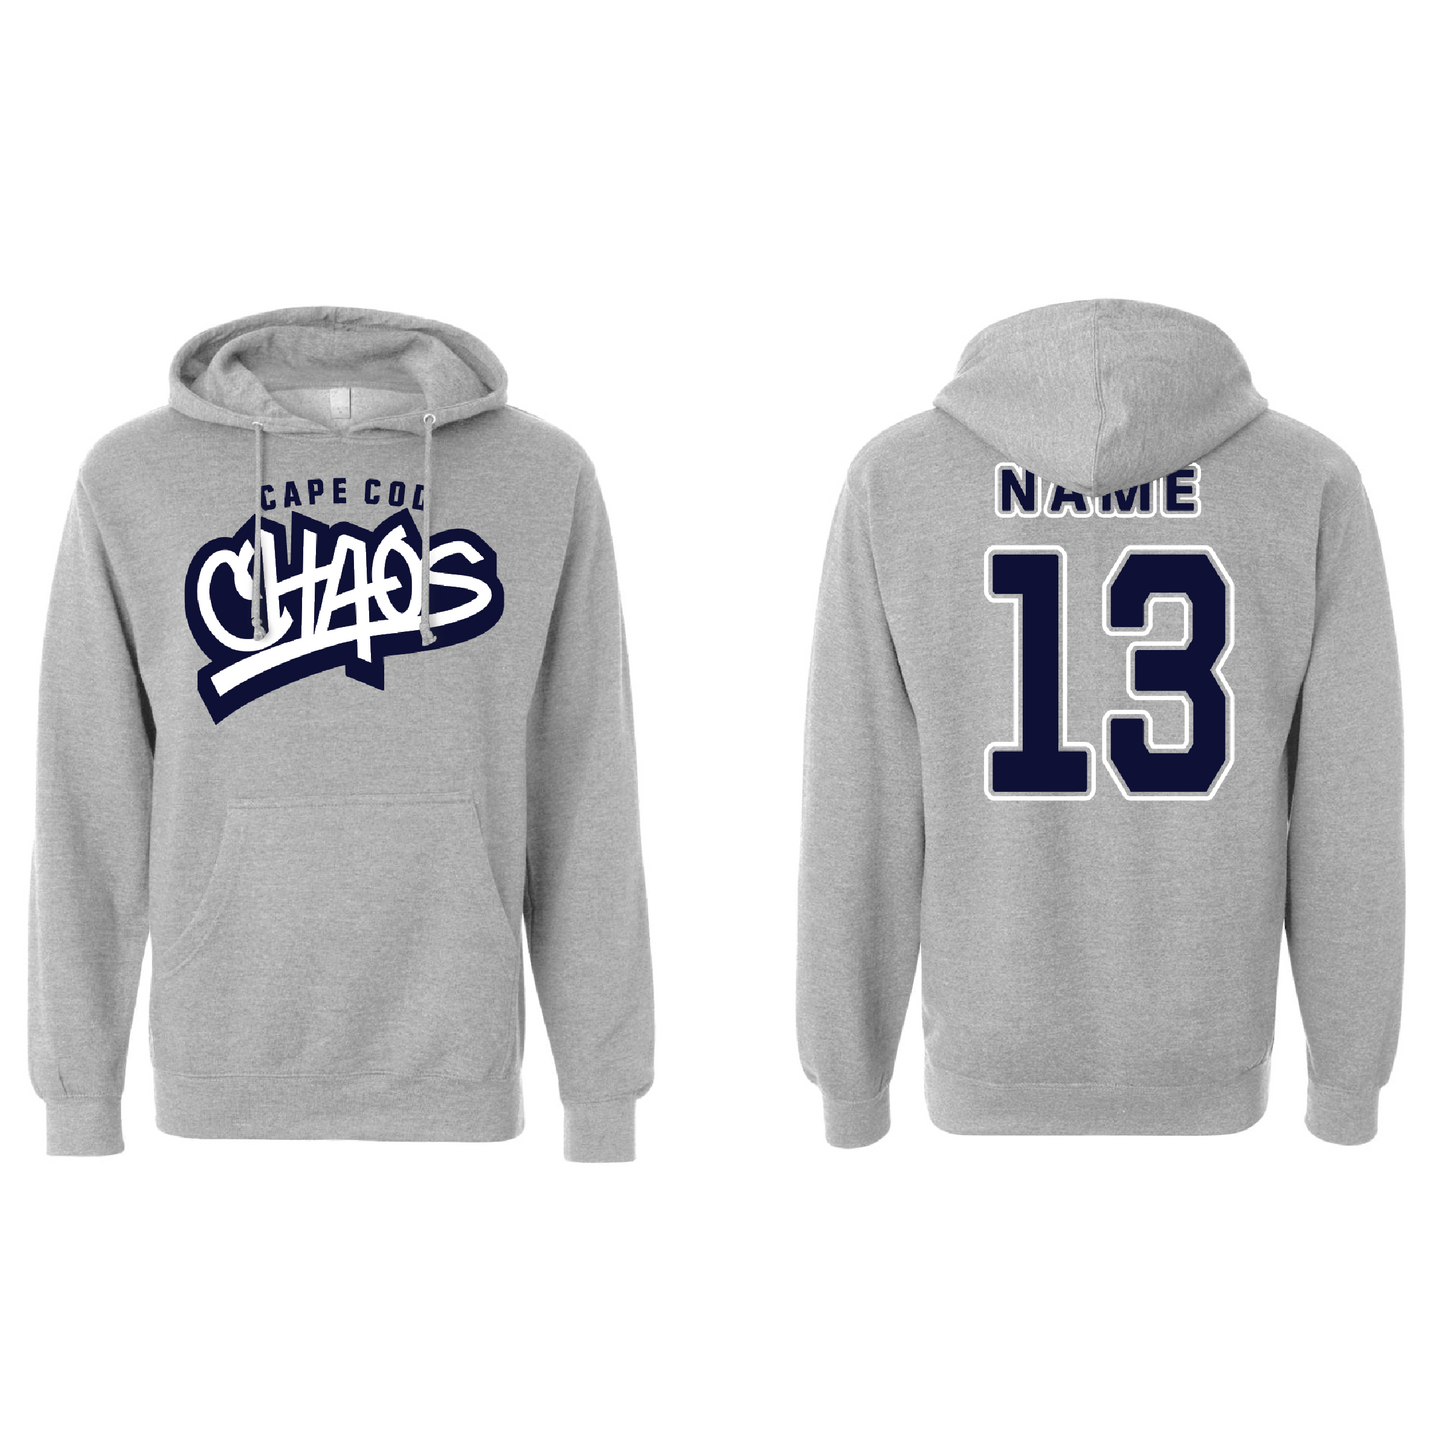 Cape Cod Chaos Baseball - Hooded Sweatshirt